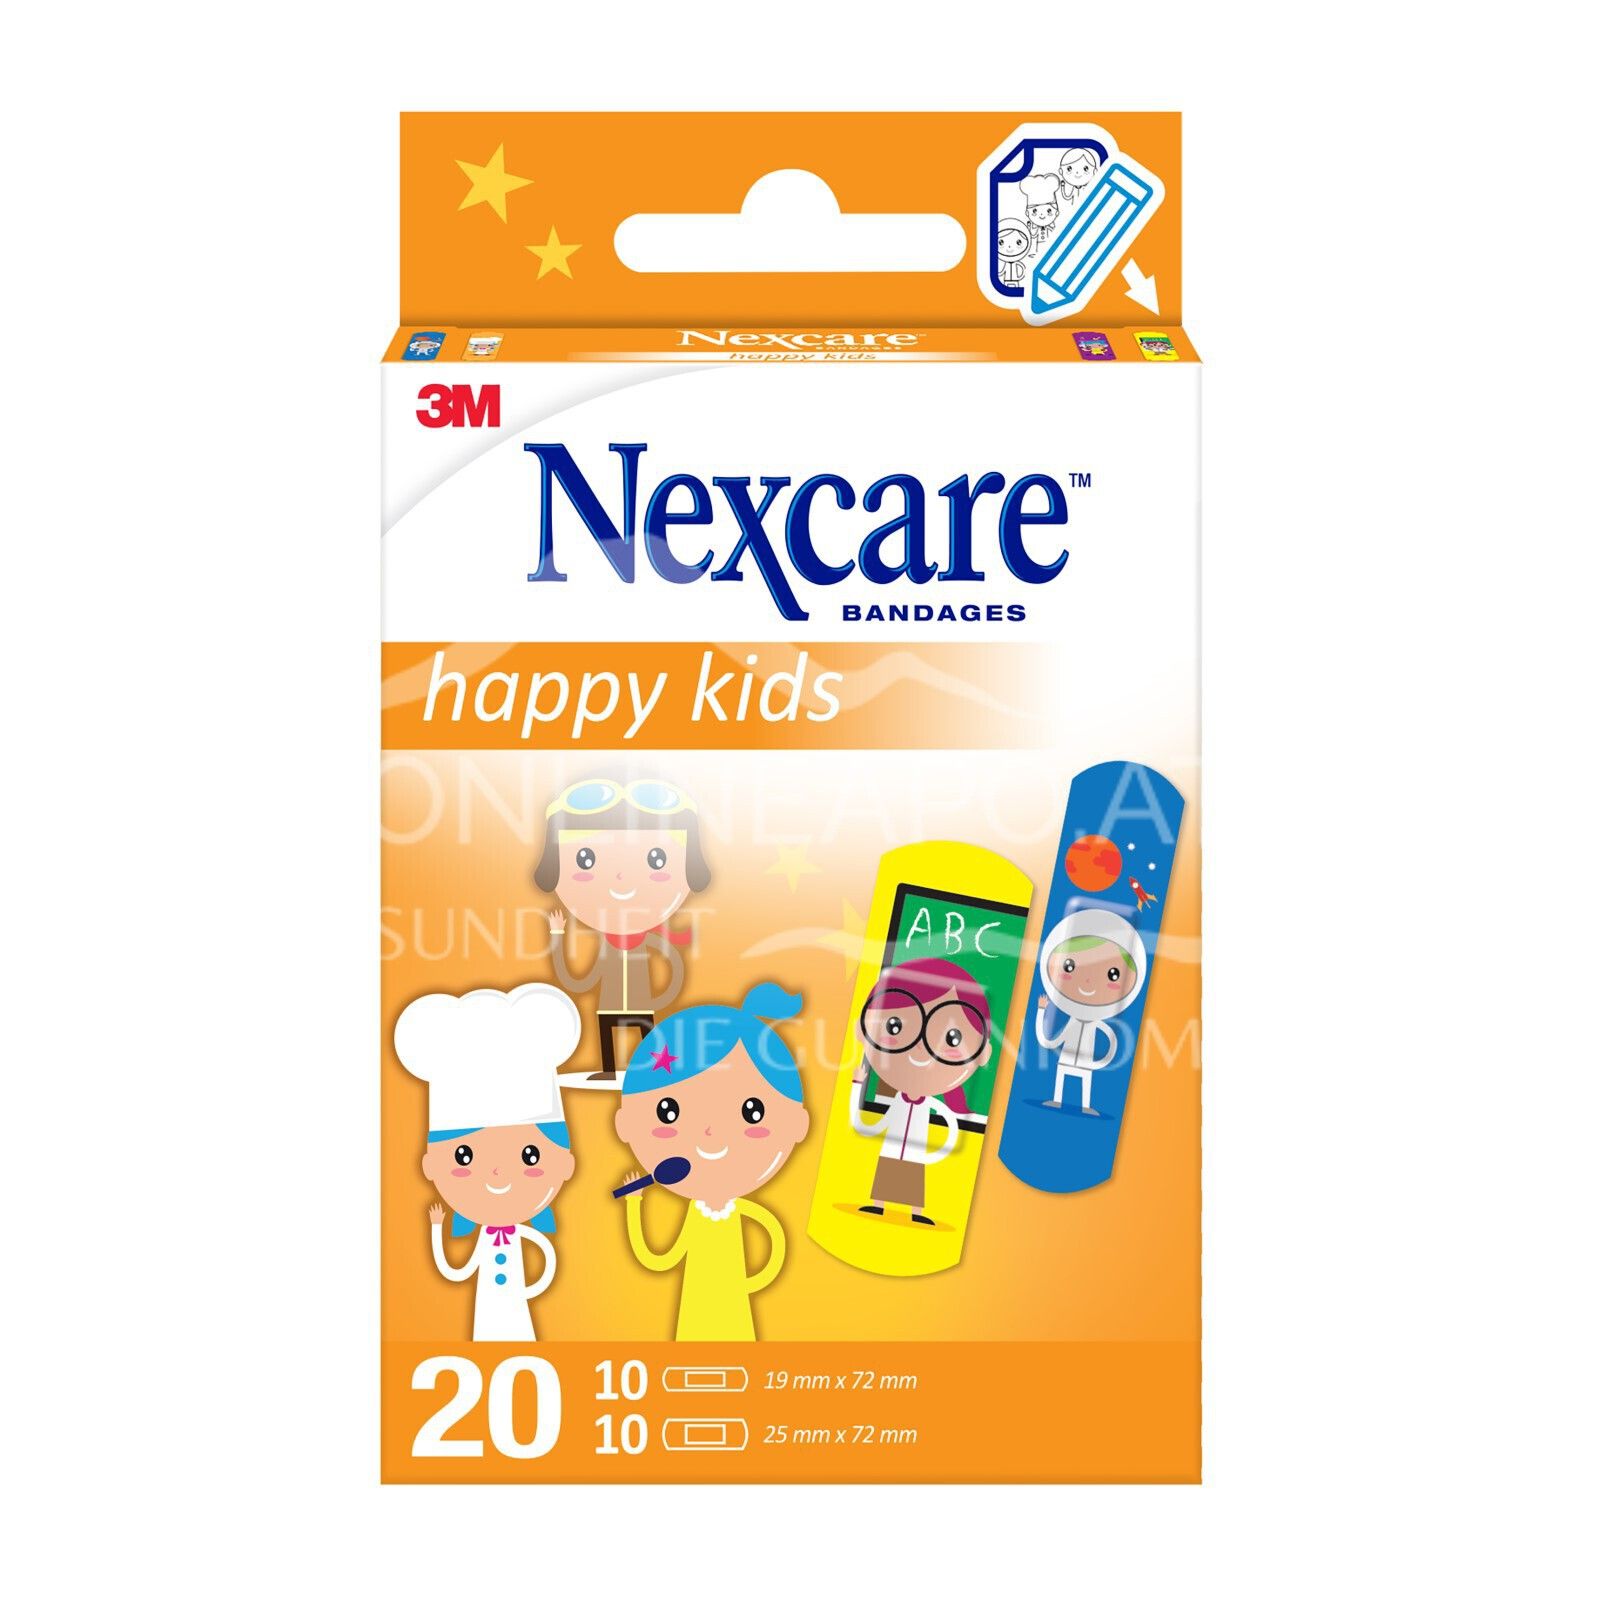 3M Nexcare™ Kinderpflaster Happy Kids Profession, 2 Größen assortiert